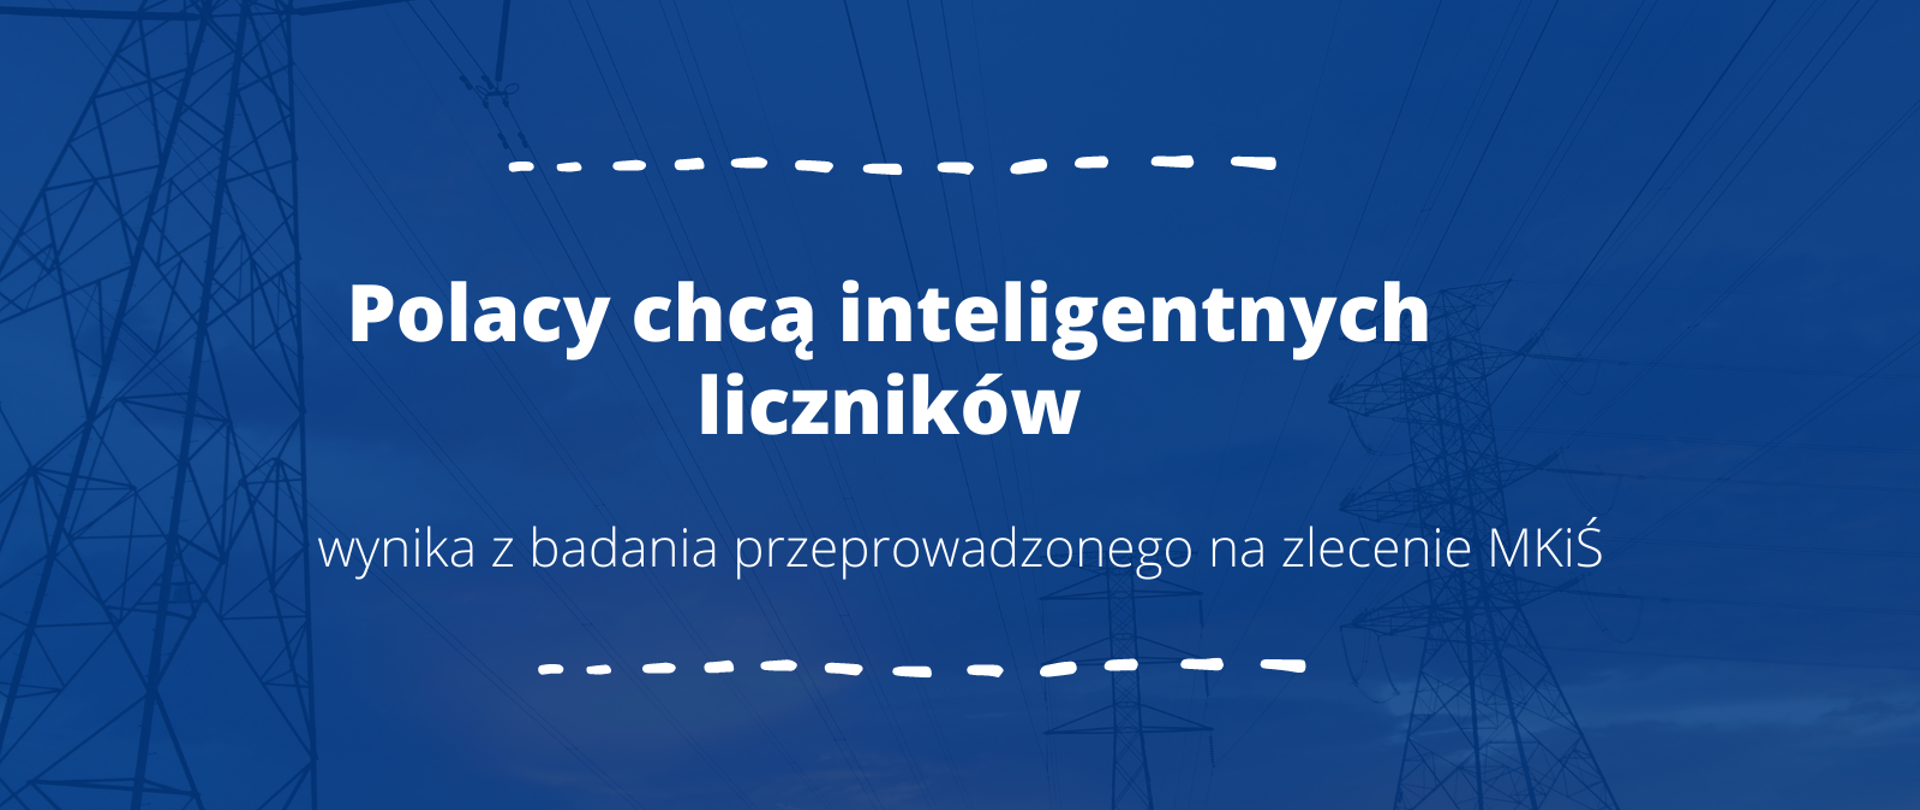 Polacy chcą inteligentnych liczników